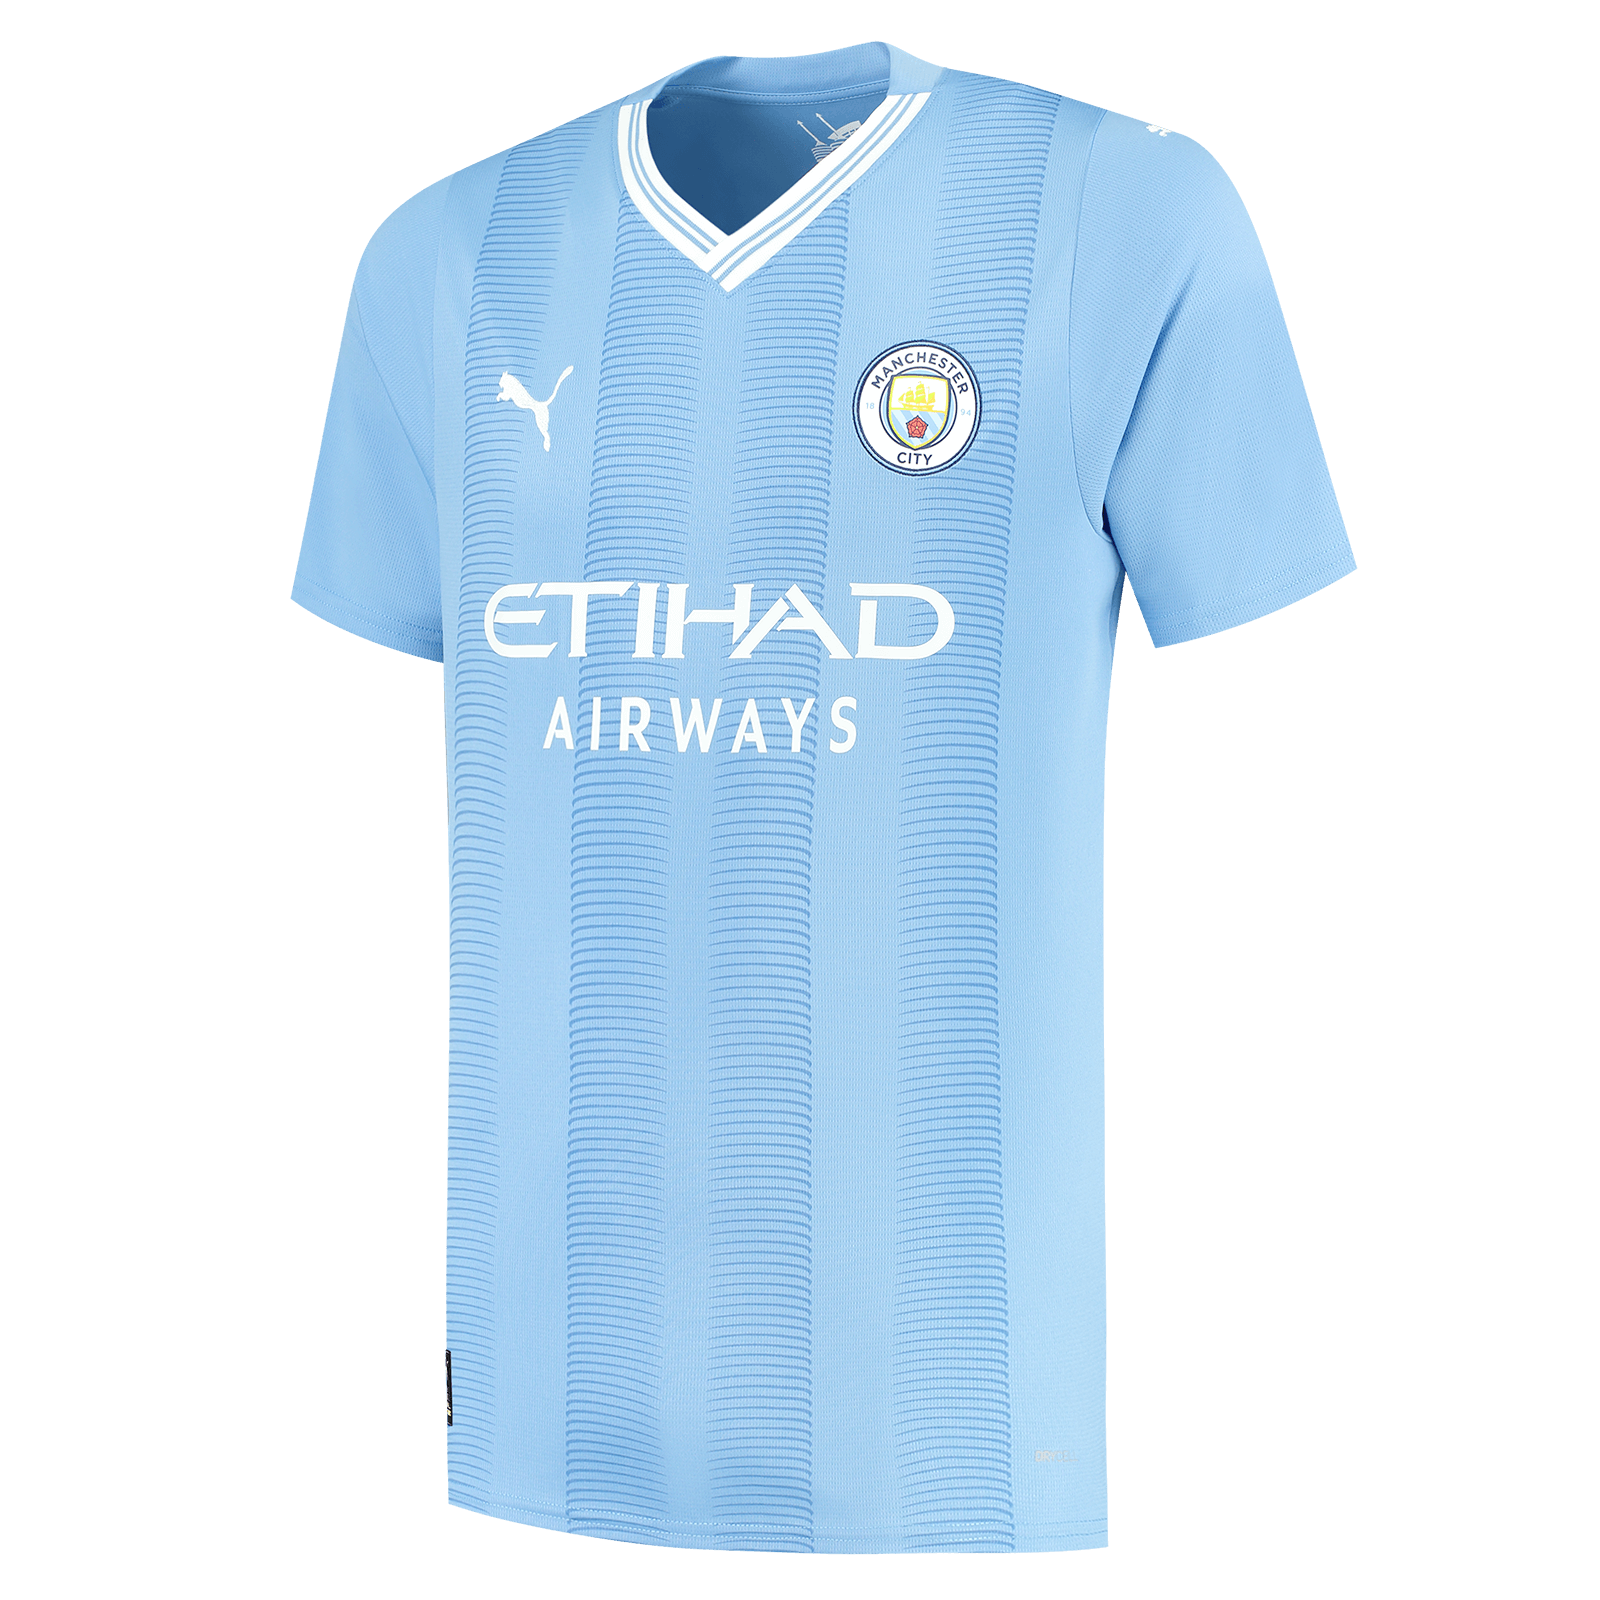 Manchester City Home Kit | New Man city Kit 23/24 - Jersey